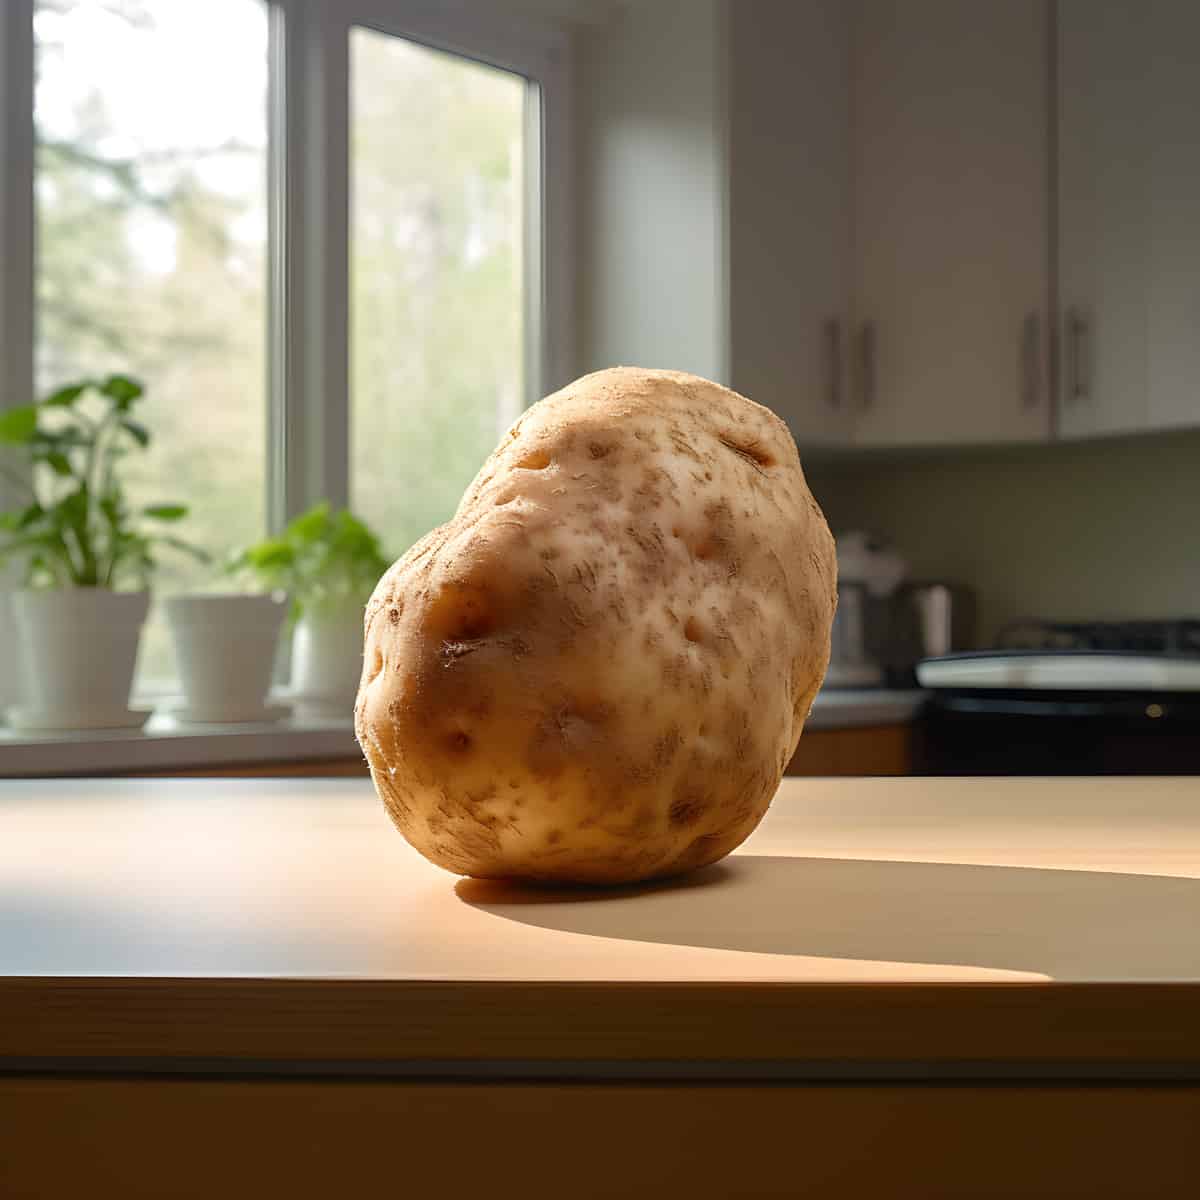 Stobrawa Potatoes on a kitchen counter